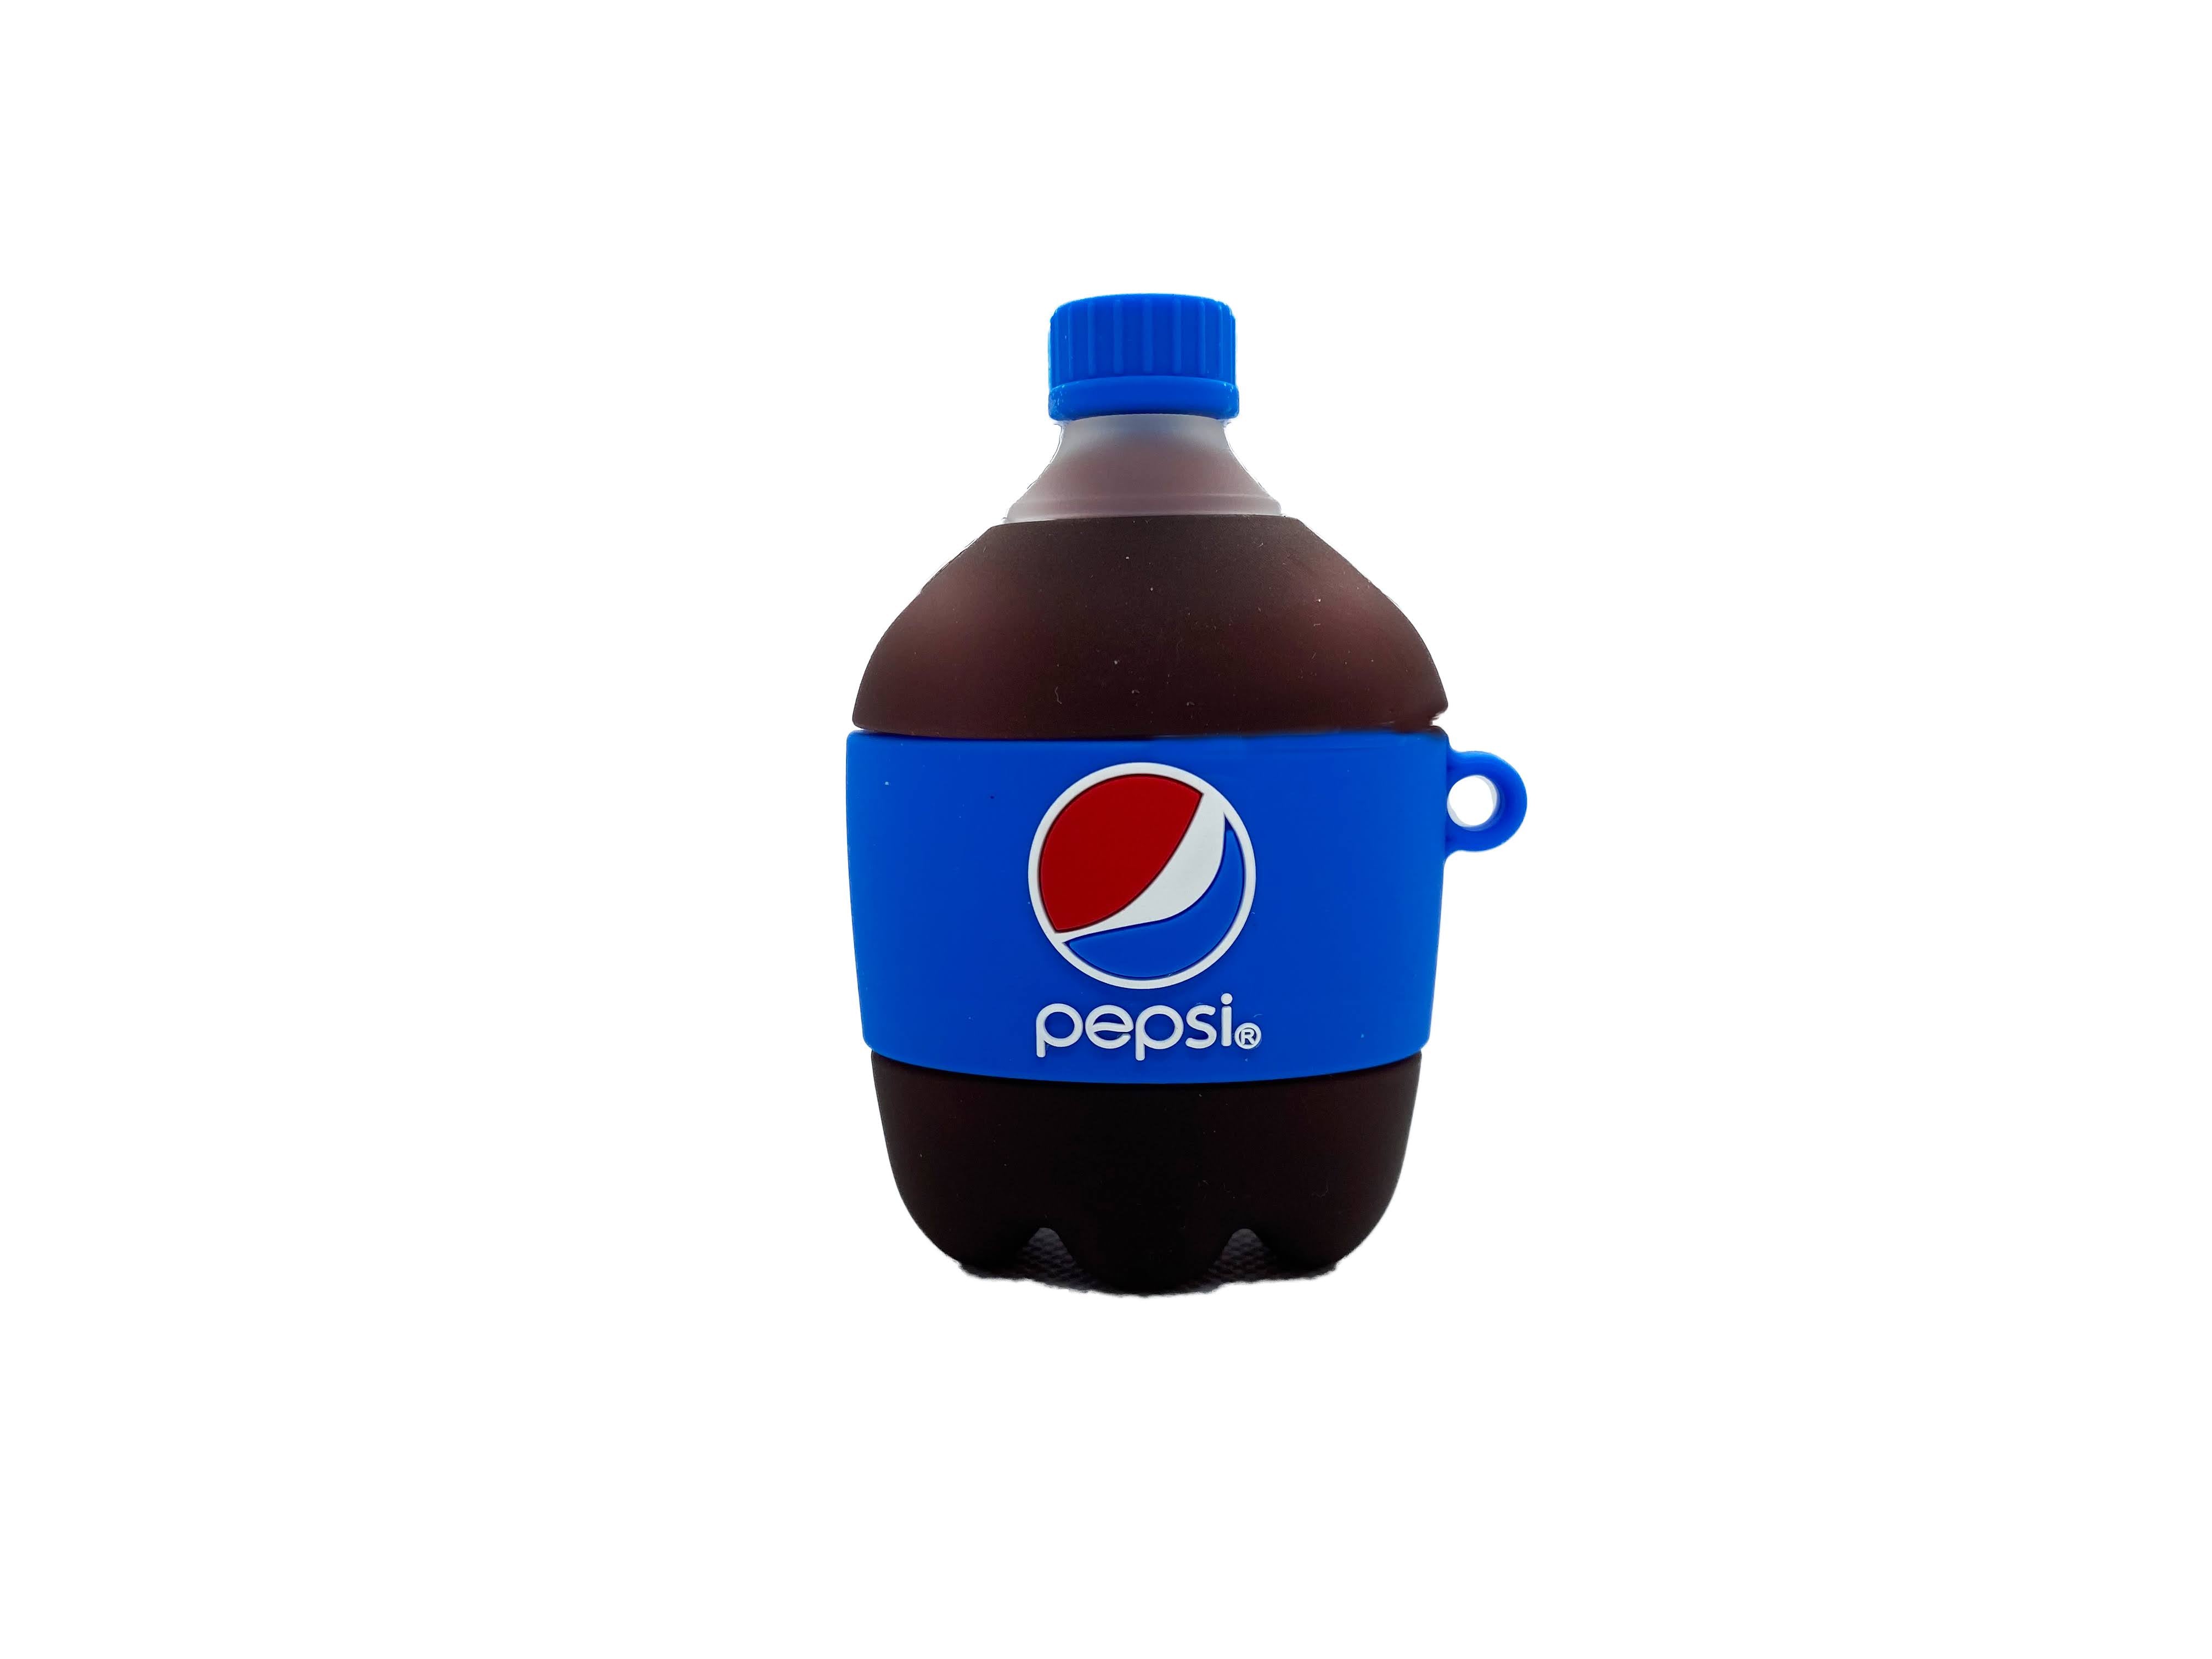 Pepsi AirPods Case